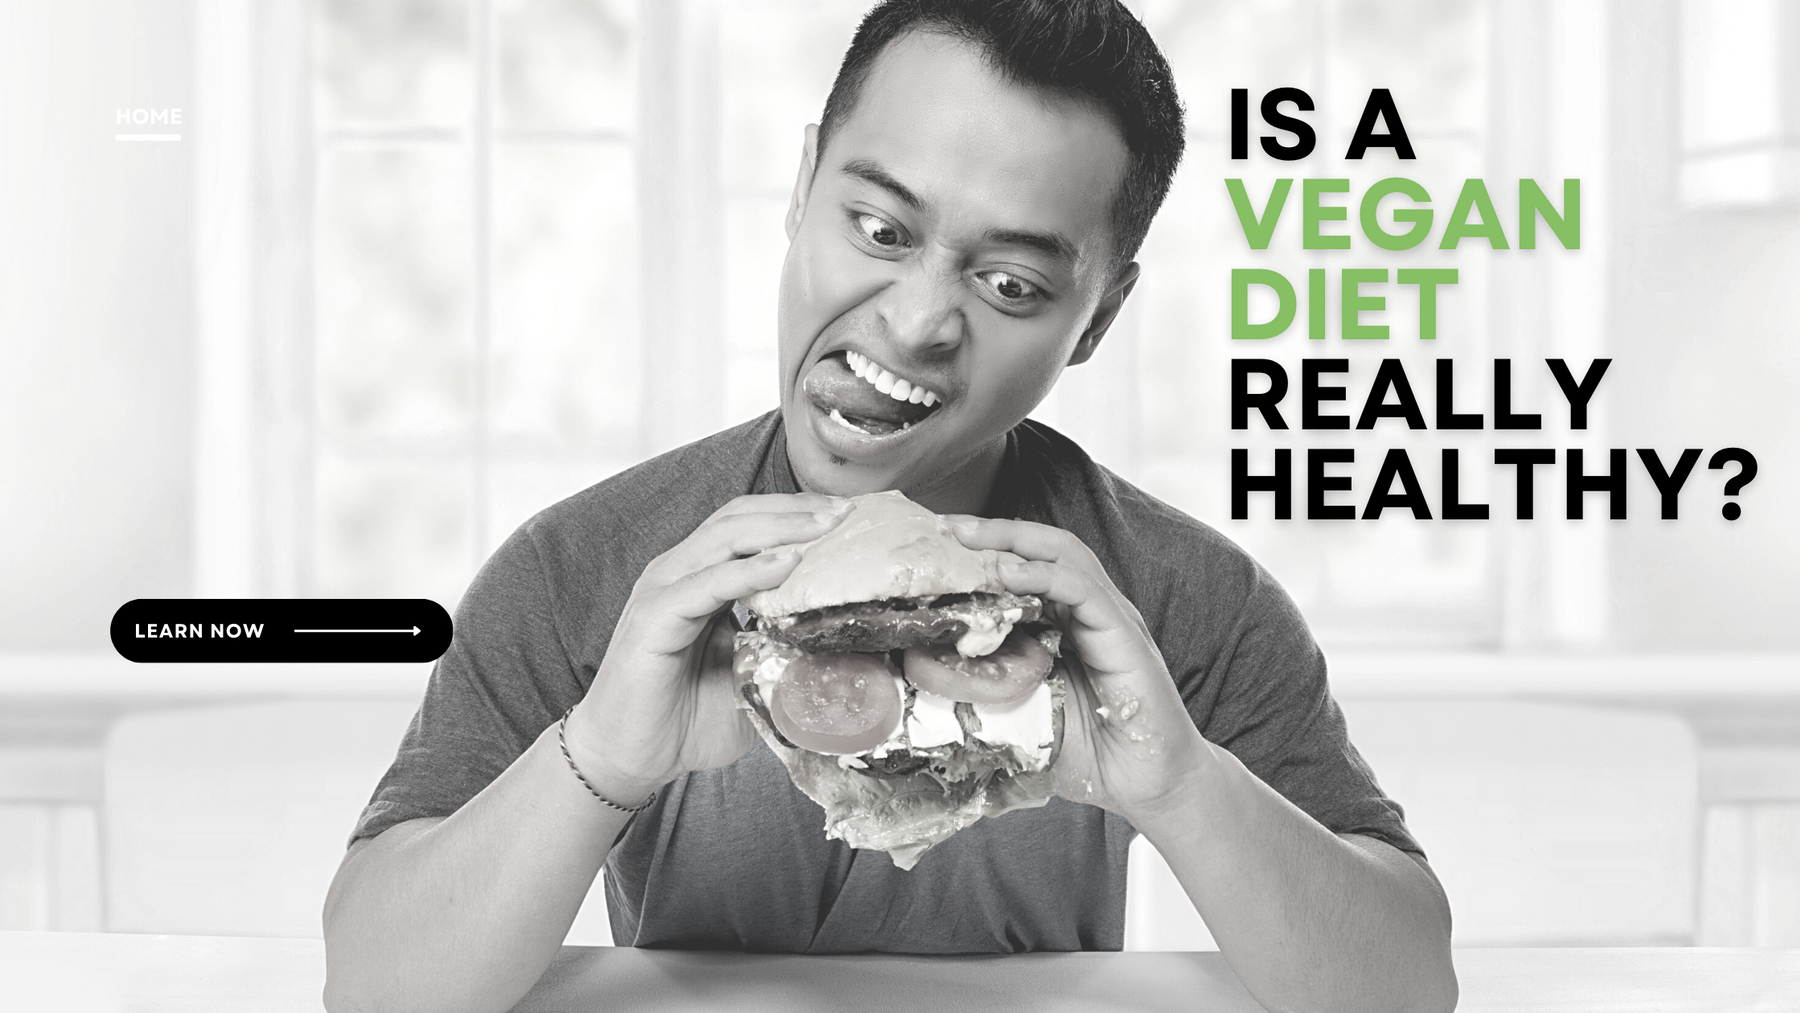 Vegan diet is the healthiest!- NOPE.